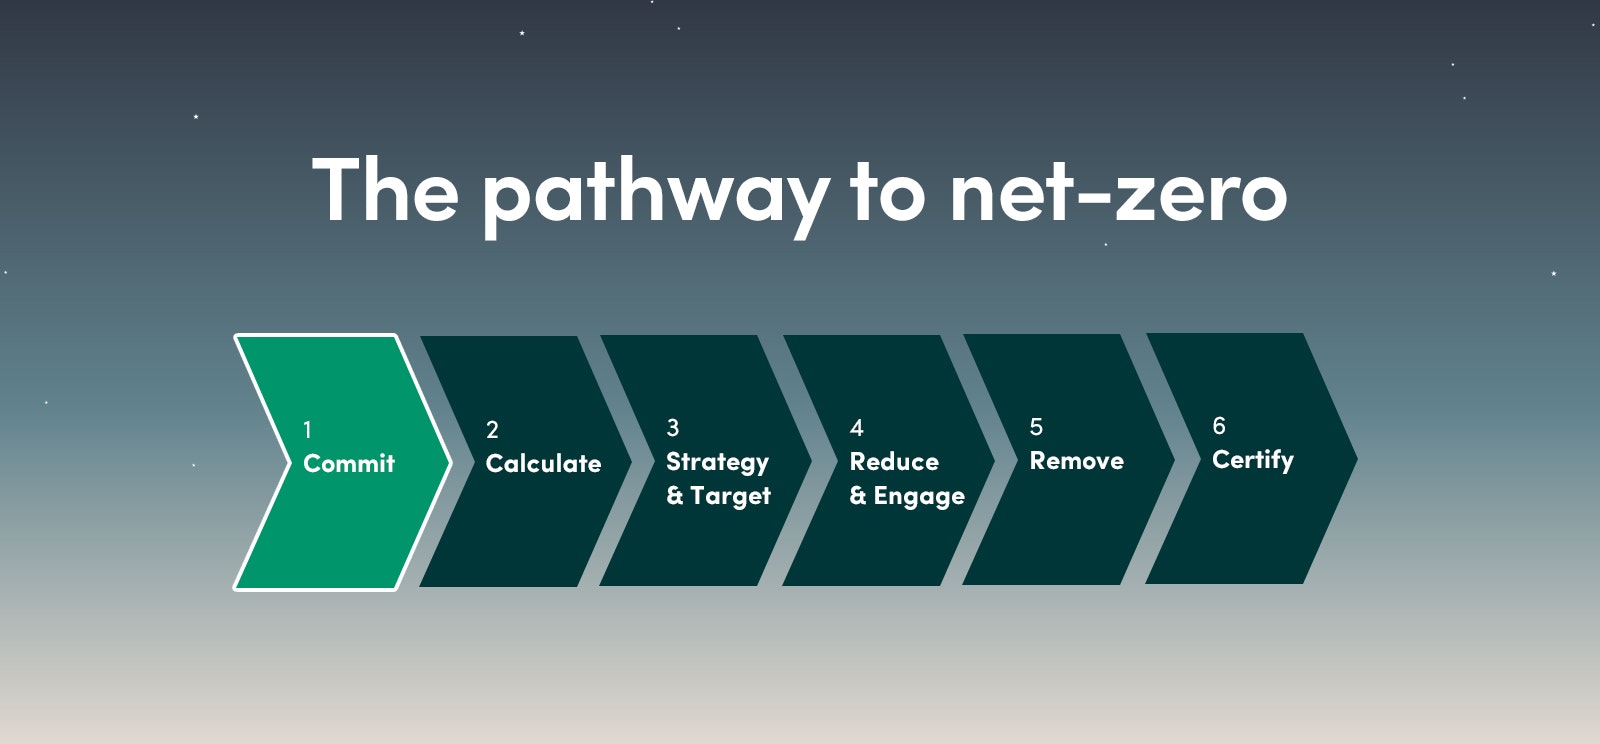 The pathway to net zero image